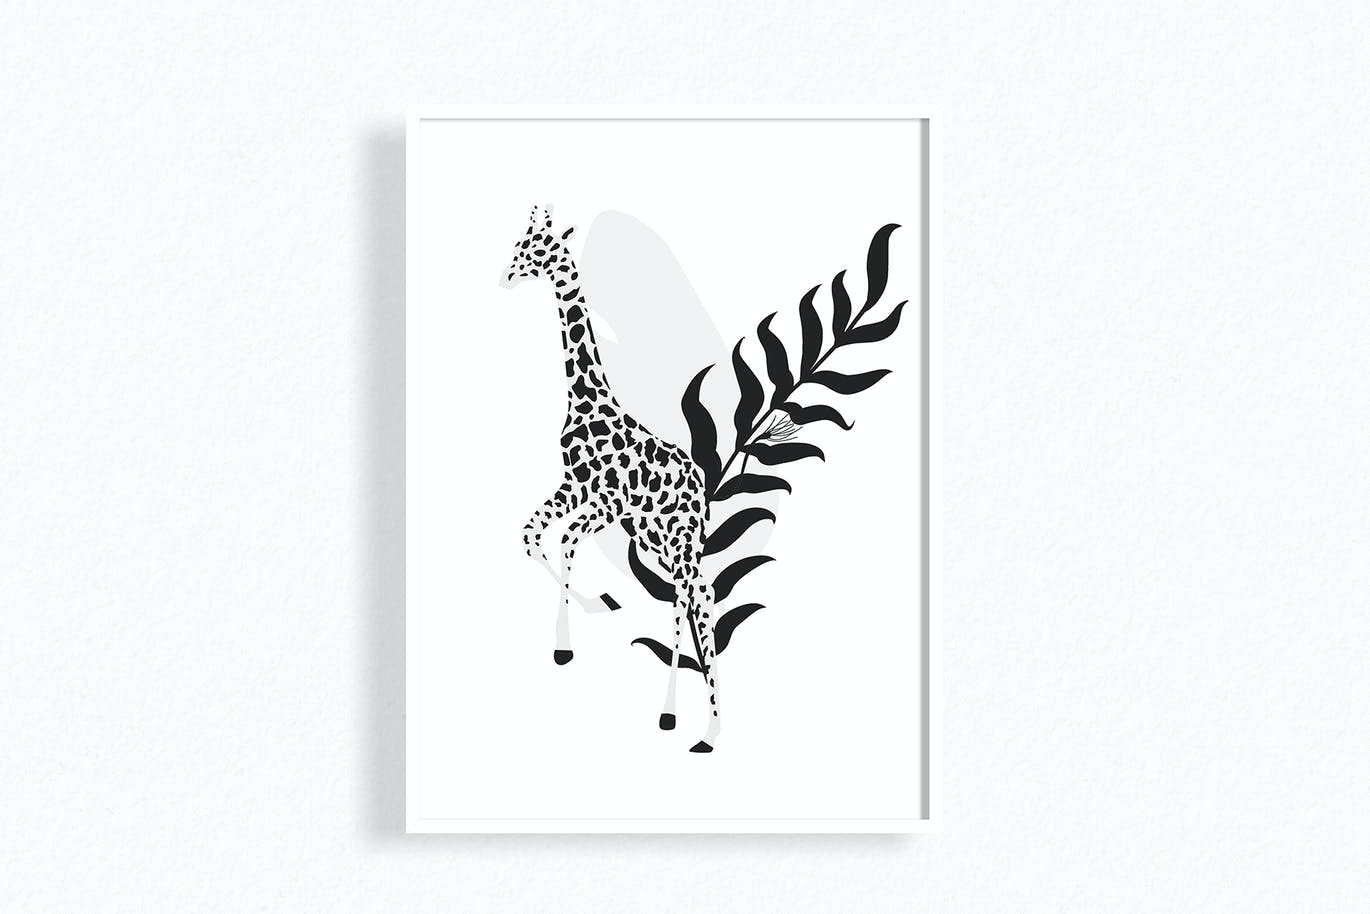 热带图案和动物剪贴画 Tropical patterns & animals clipart 图片素材 第10张